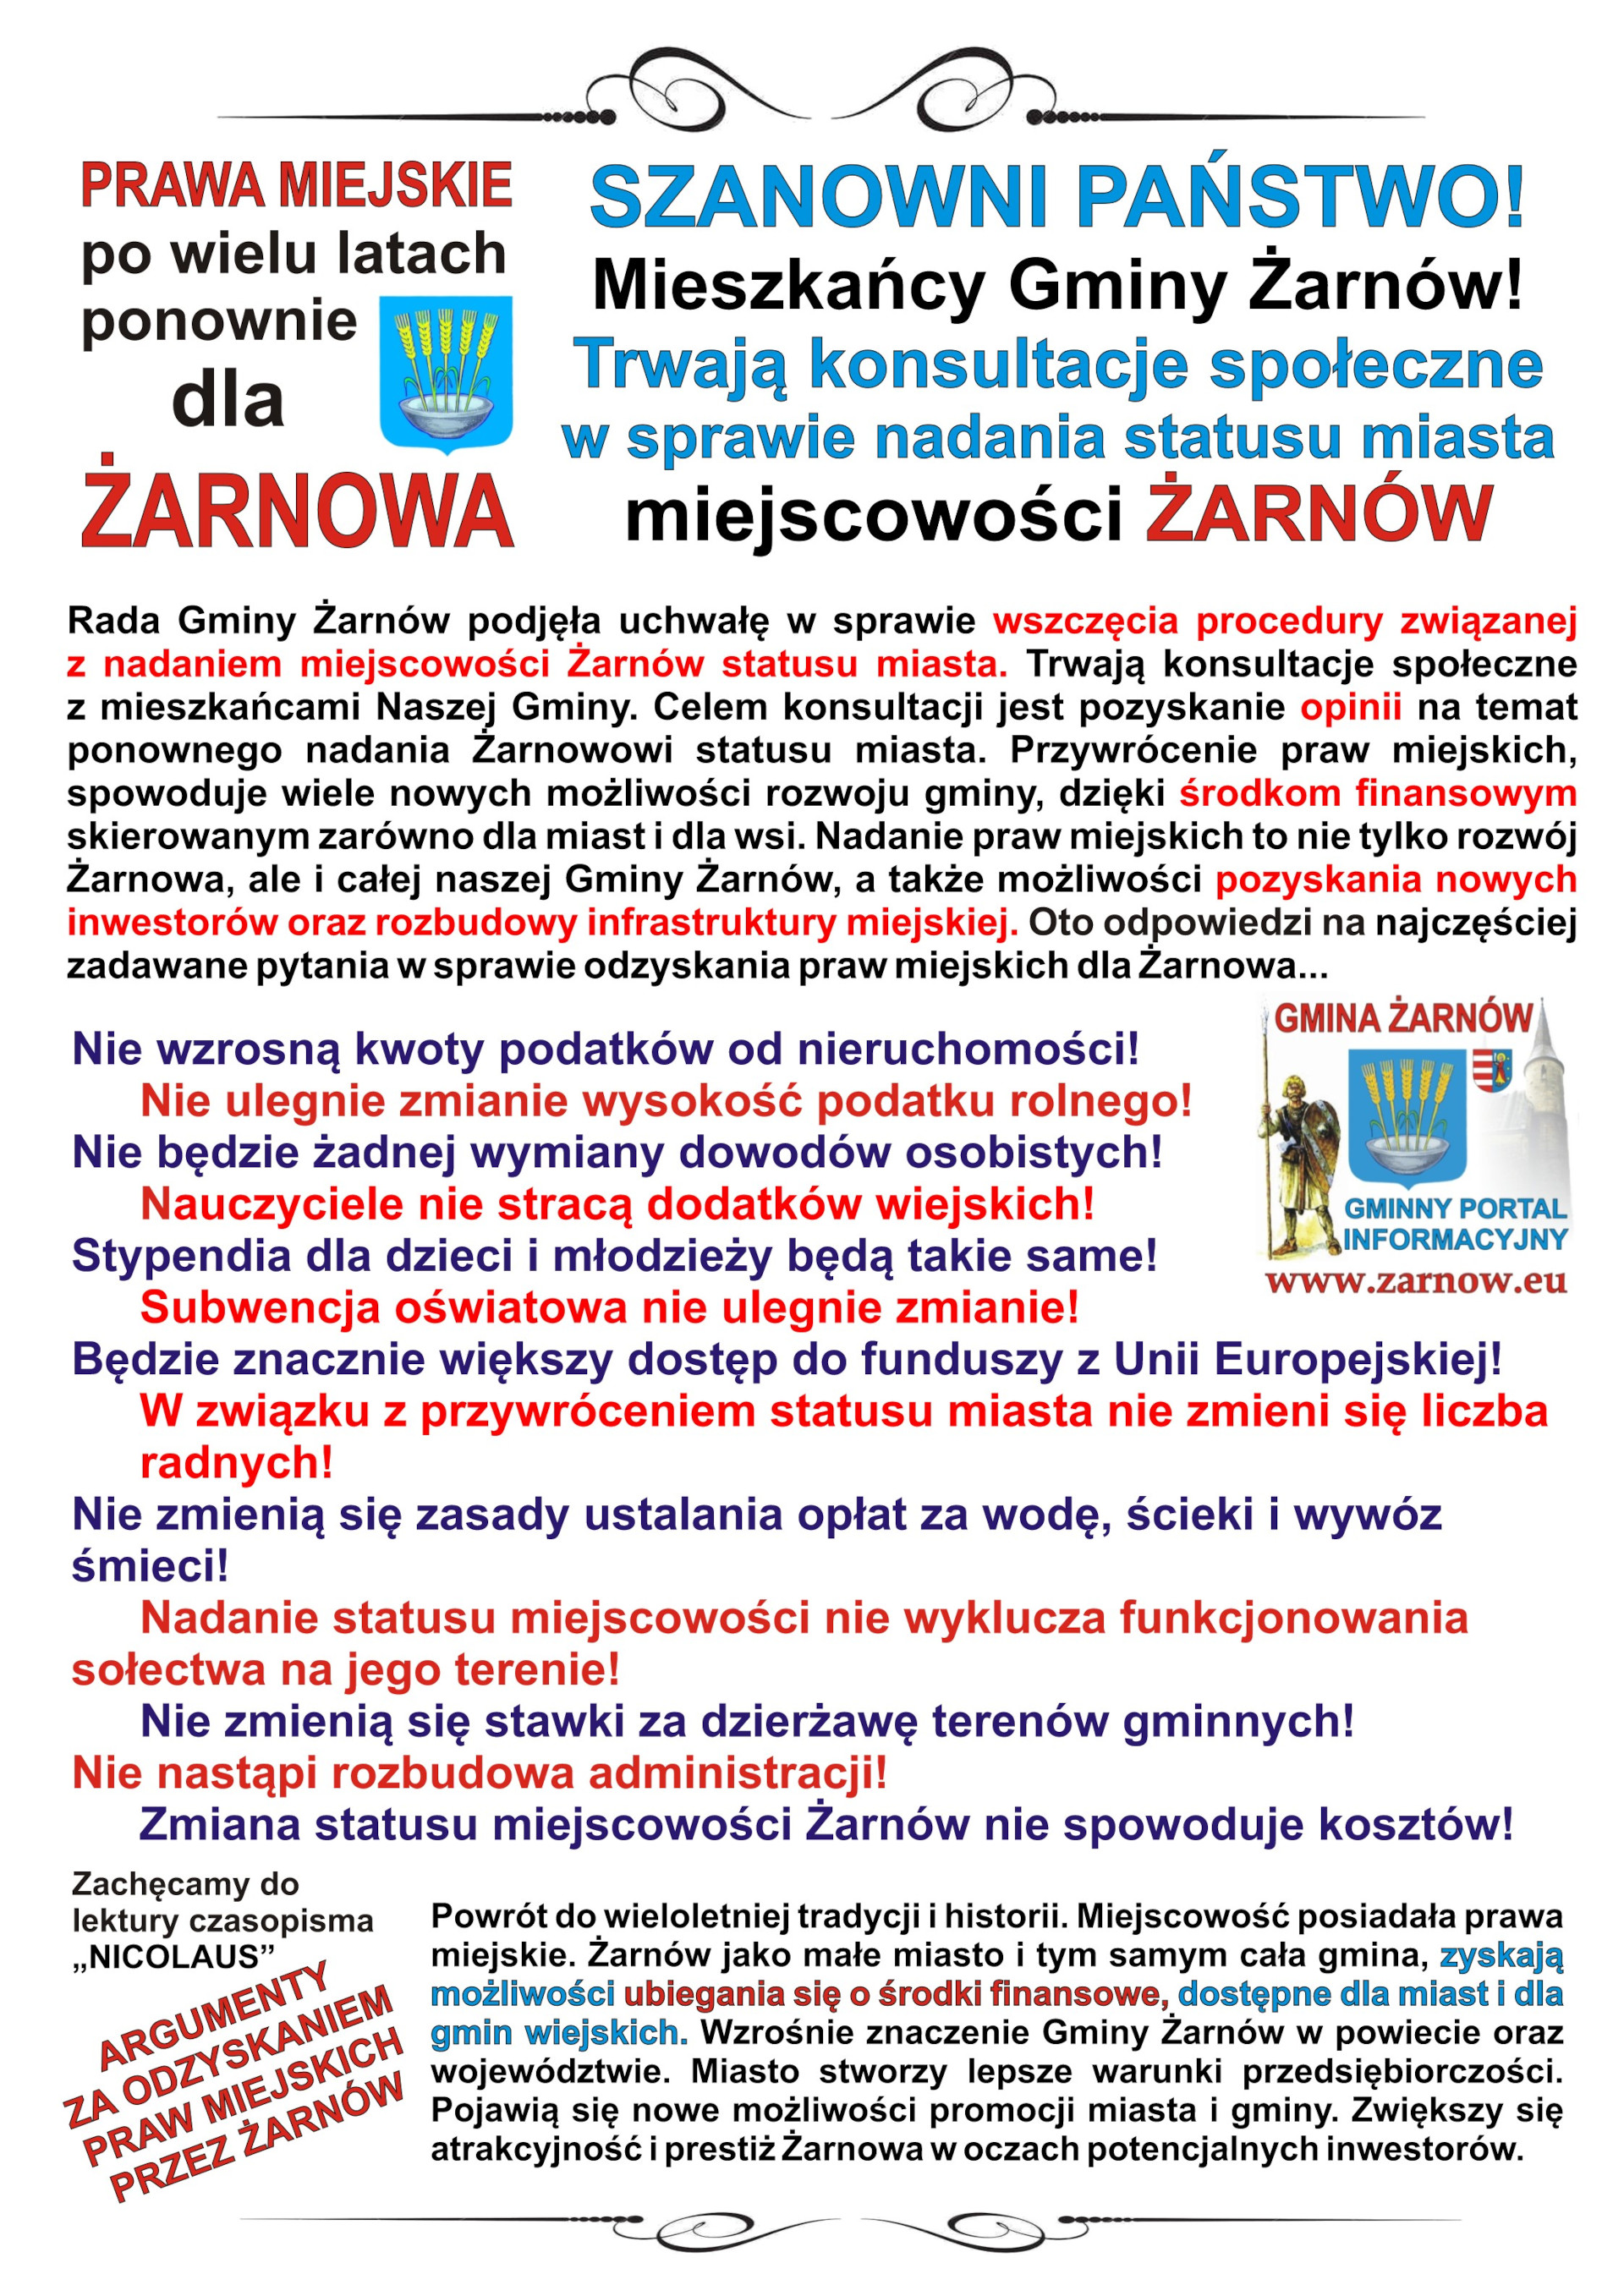 Plakat promujący ideę odzyskania praw miejskich dla Żarnowa